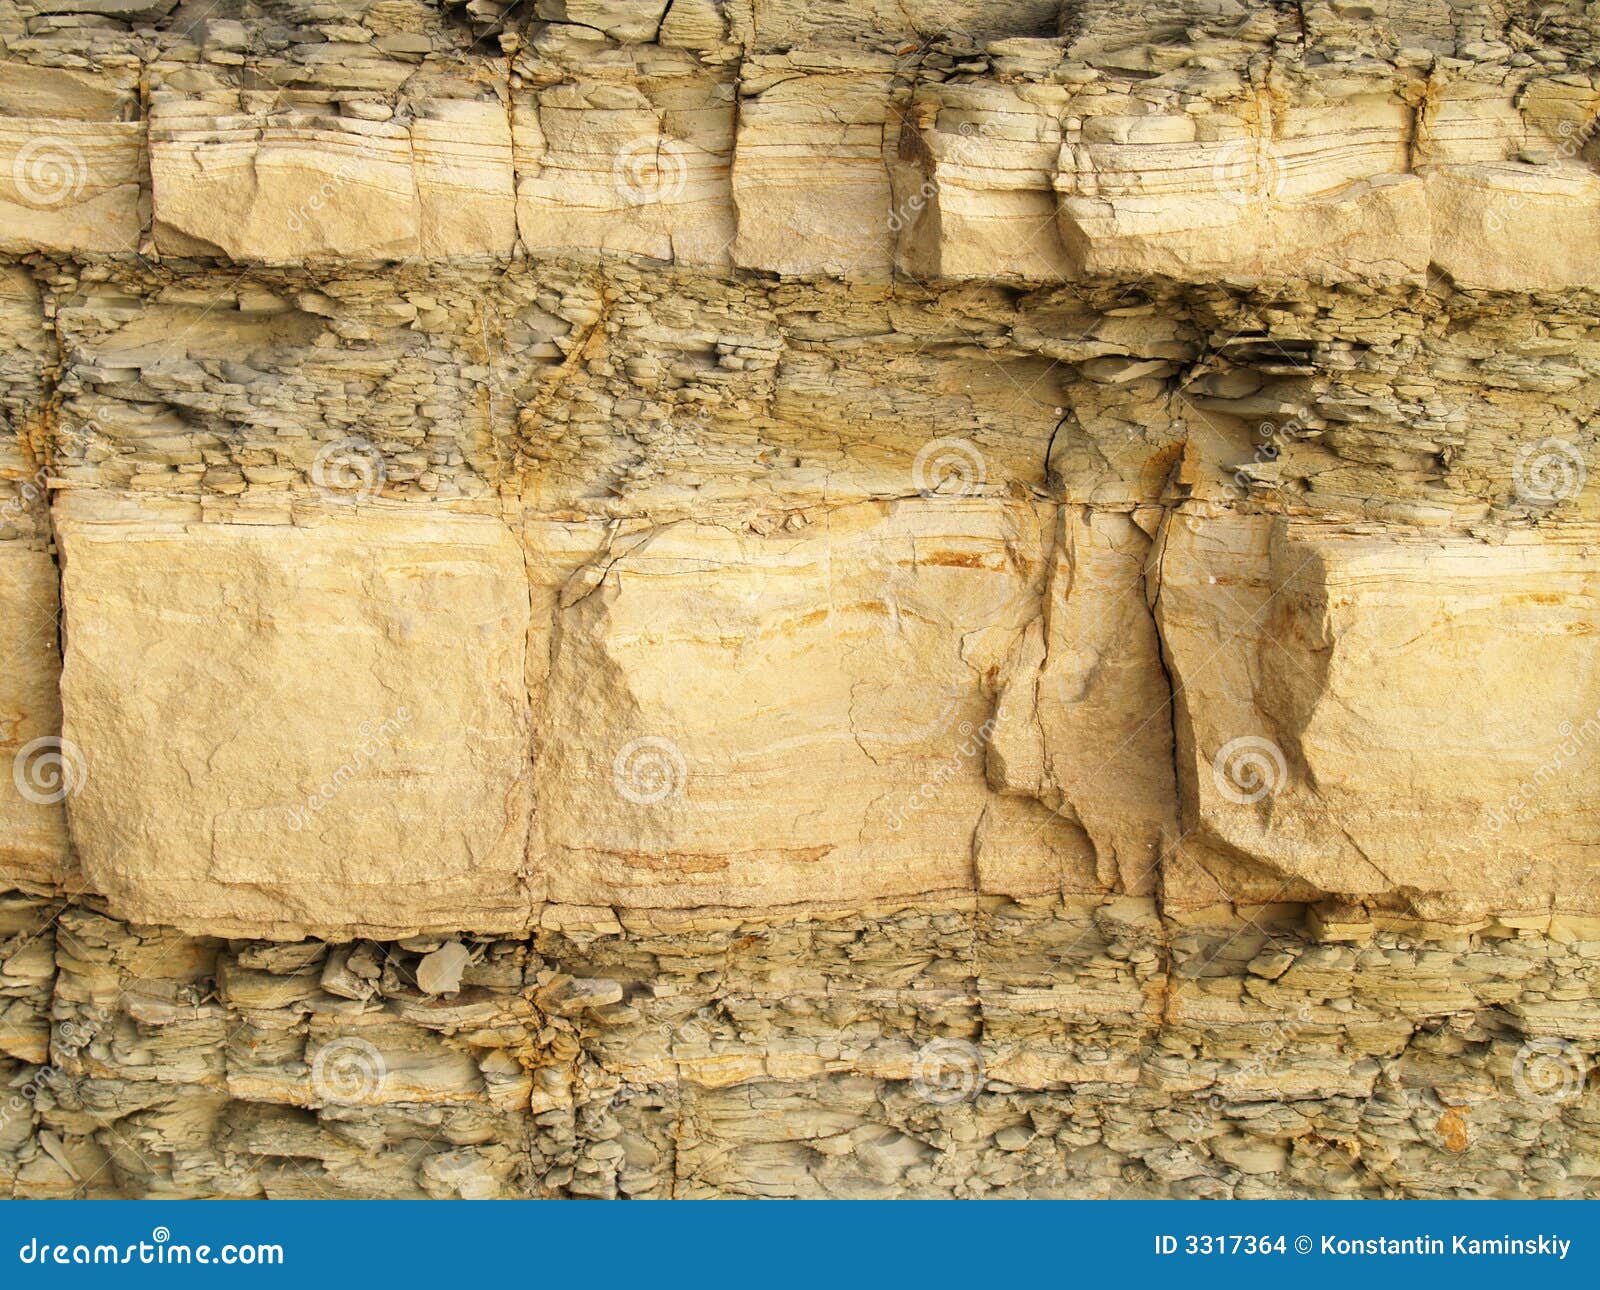 shale rock texture